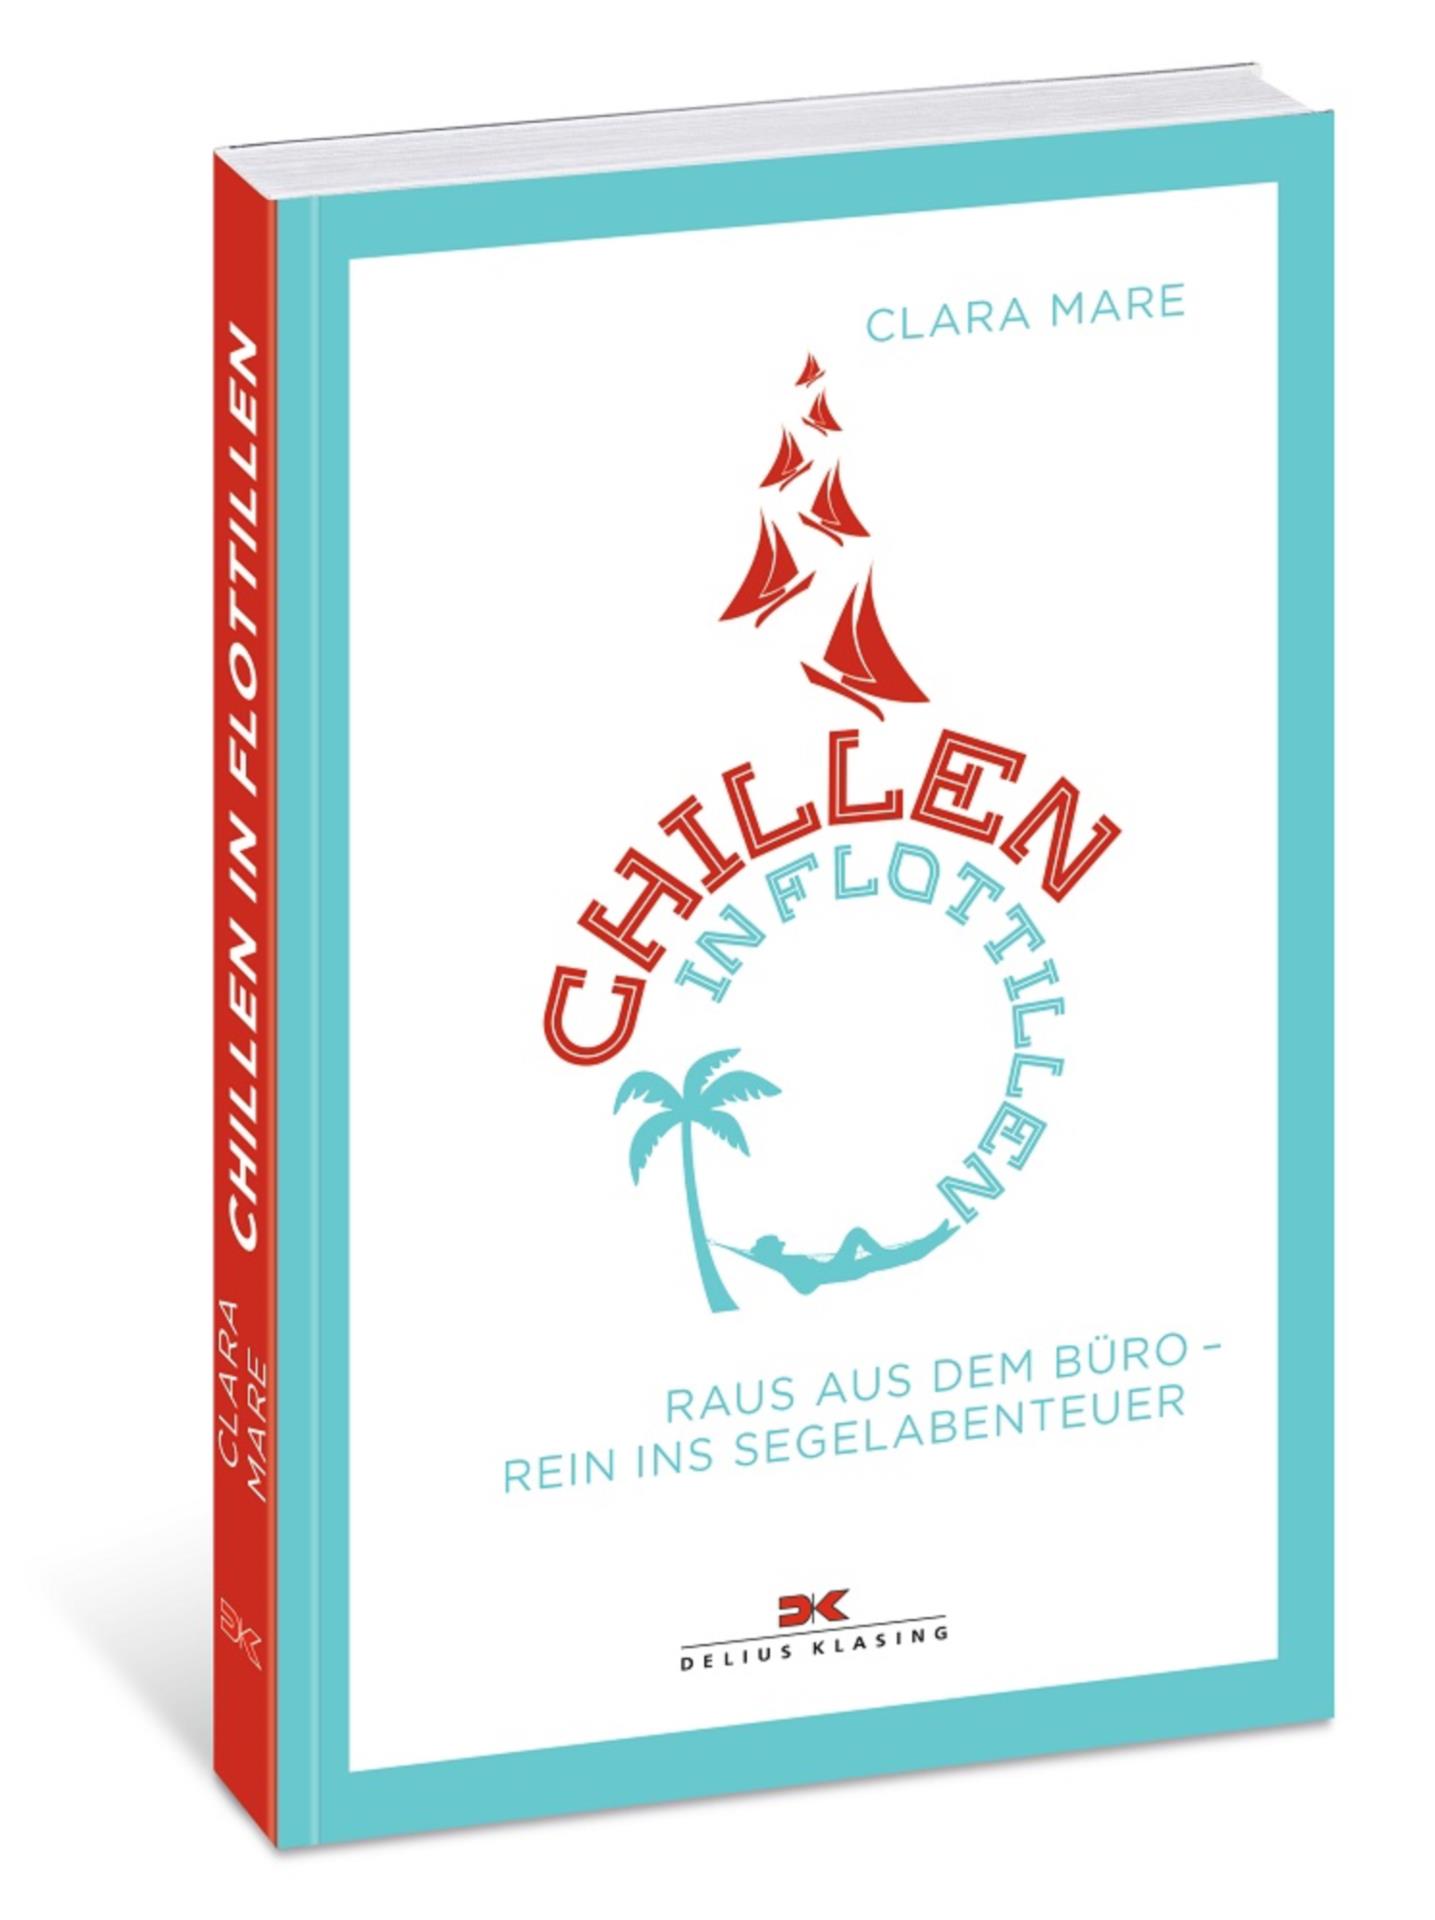 Chillen in Flotillen - Clara Mare